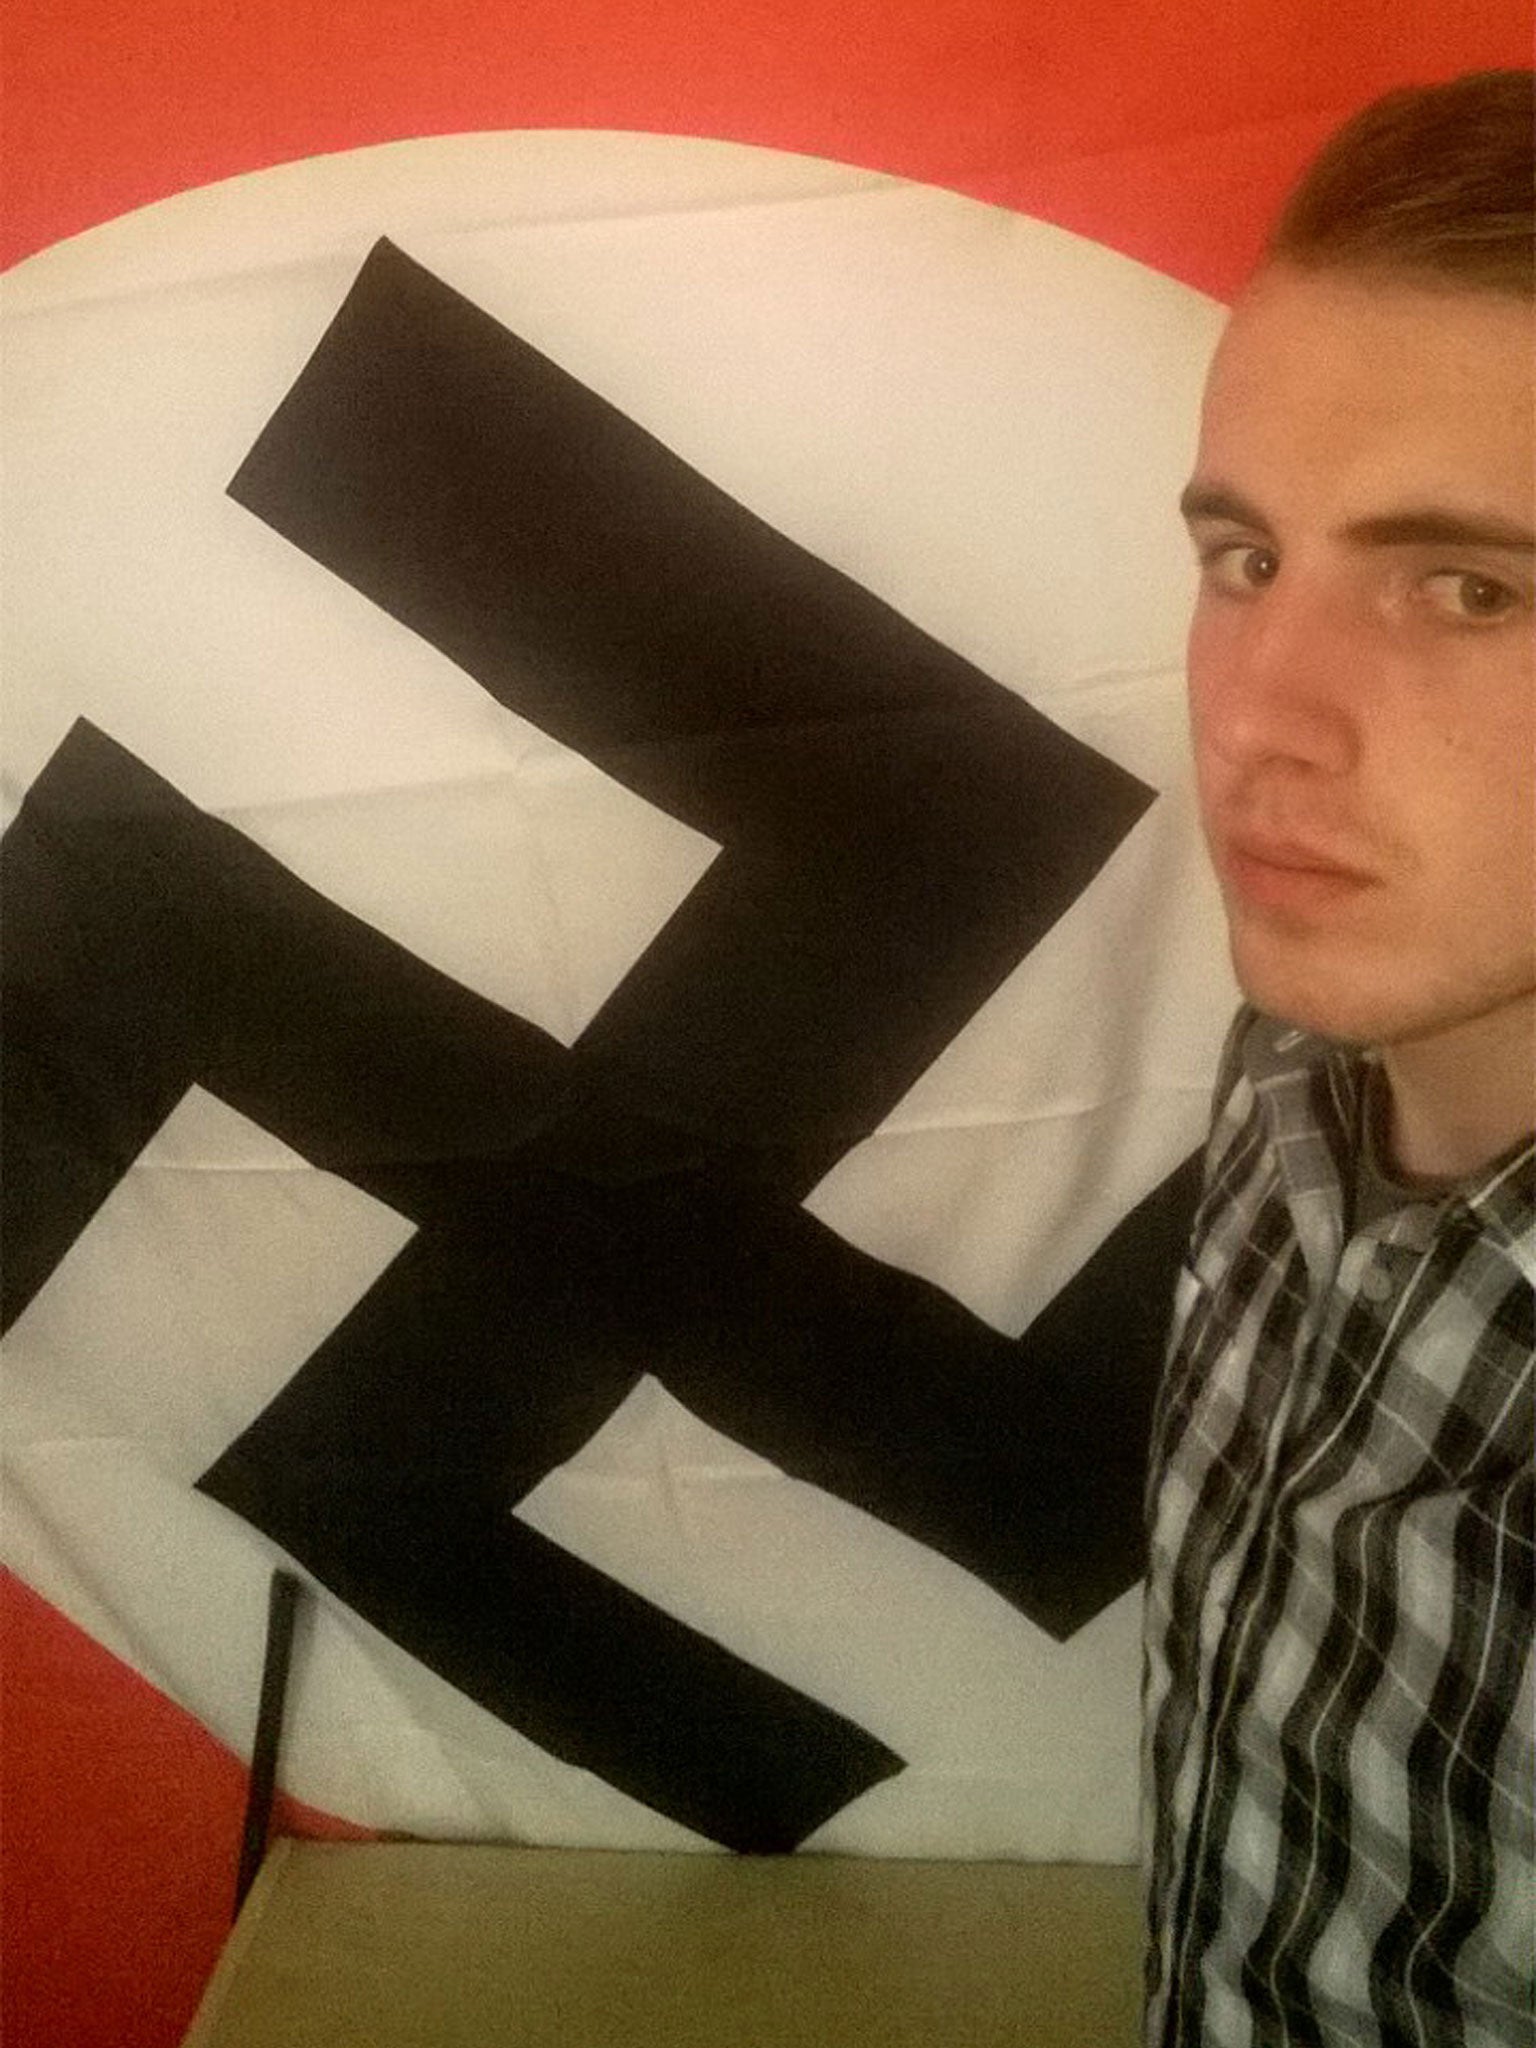 nazi burning gay flag